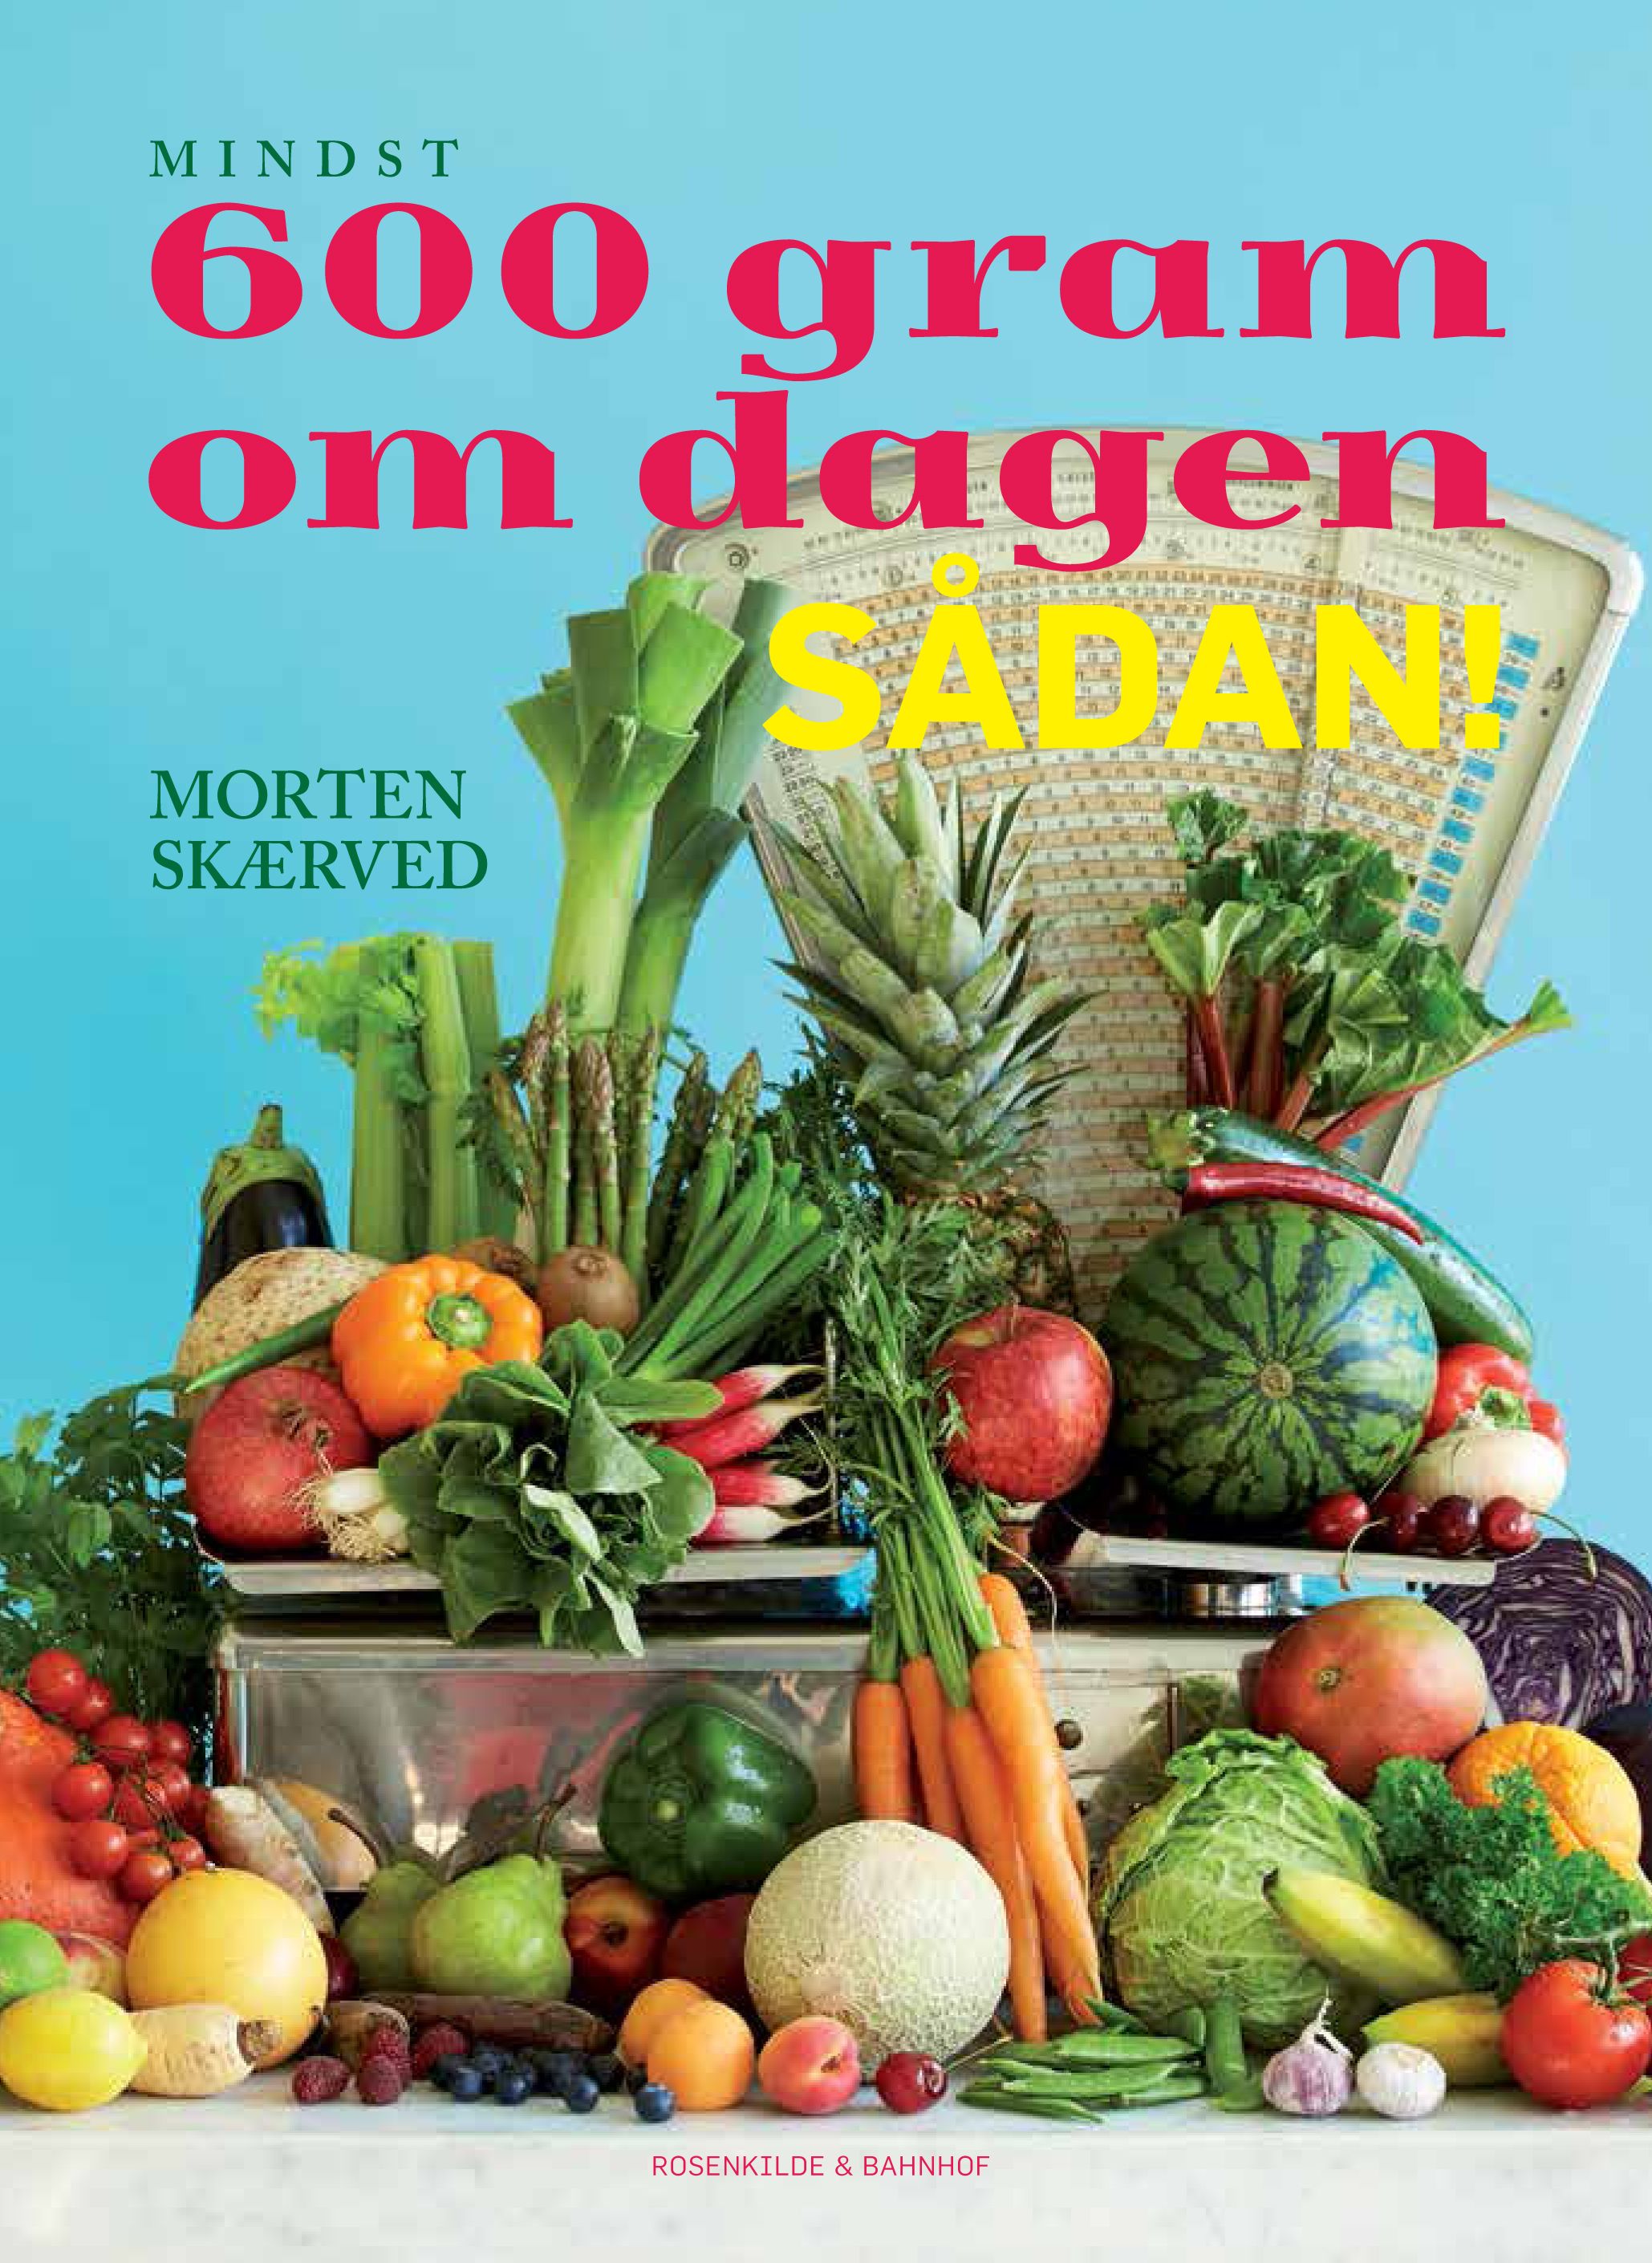 600 gram om dagen - sådan!, e-bog af Morten Skærved